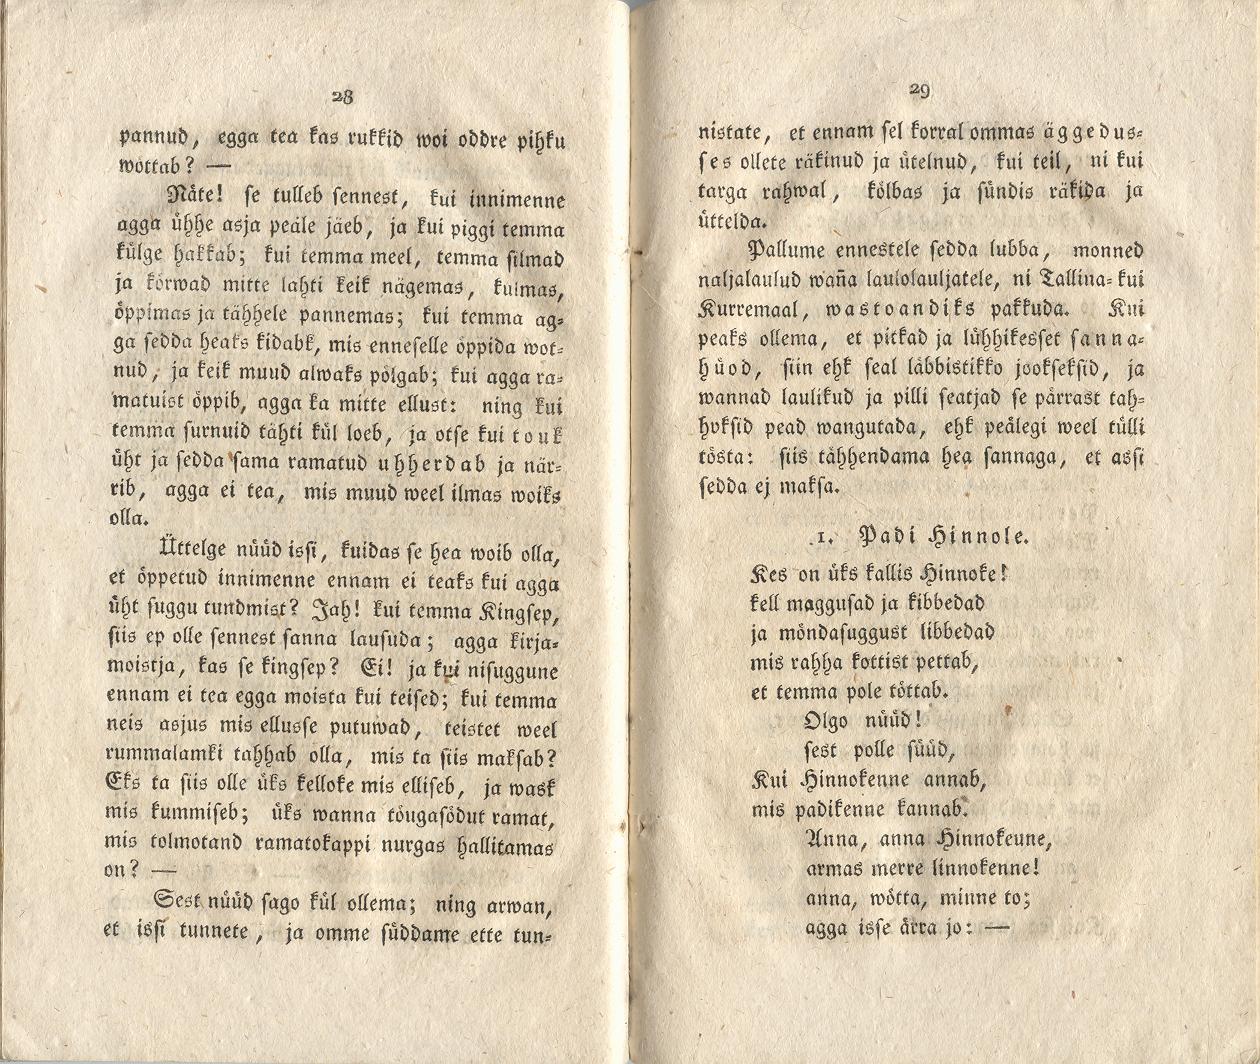 Ehstnische Originalblätter für Deutsche (1816) | 21. (28-29) Haupttext